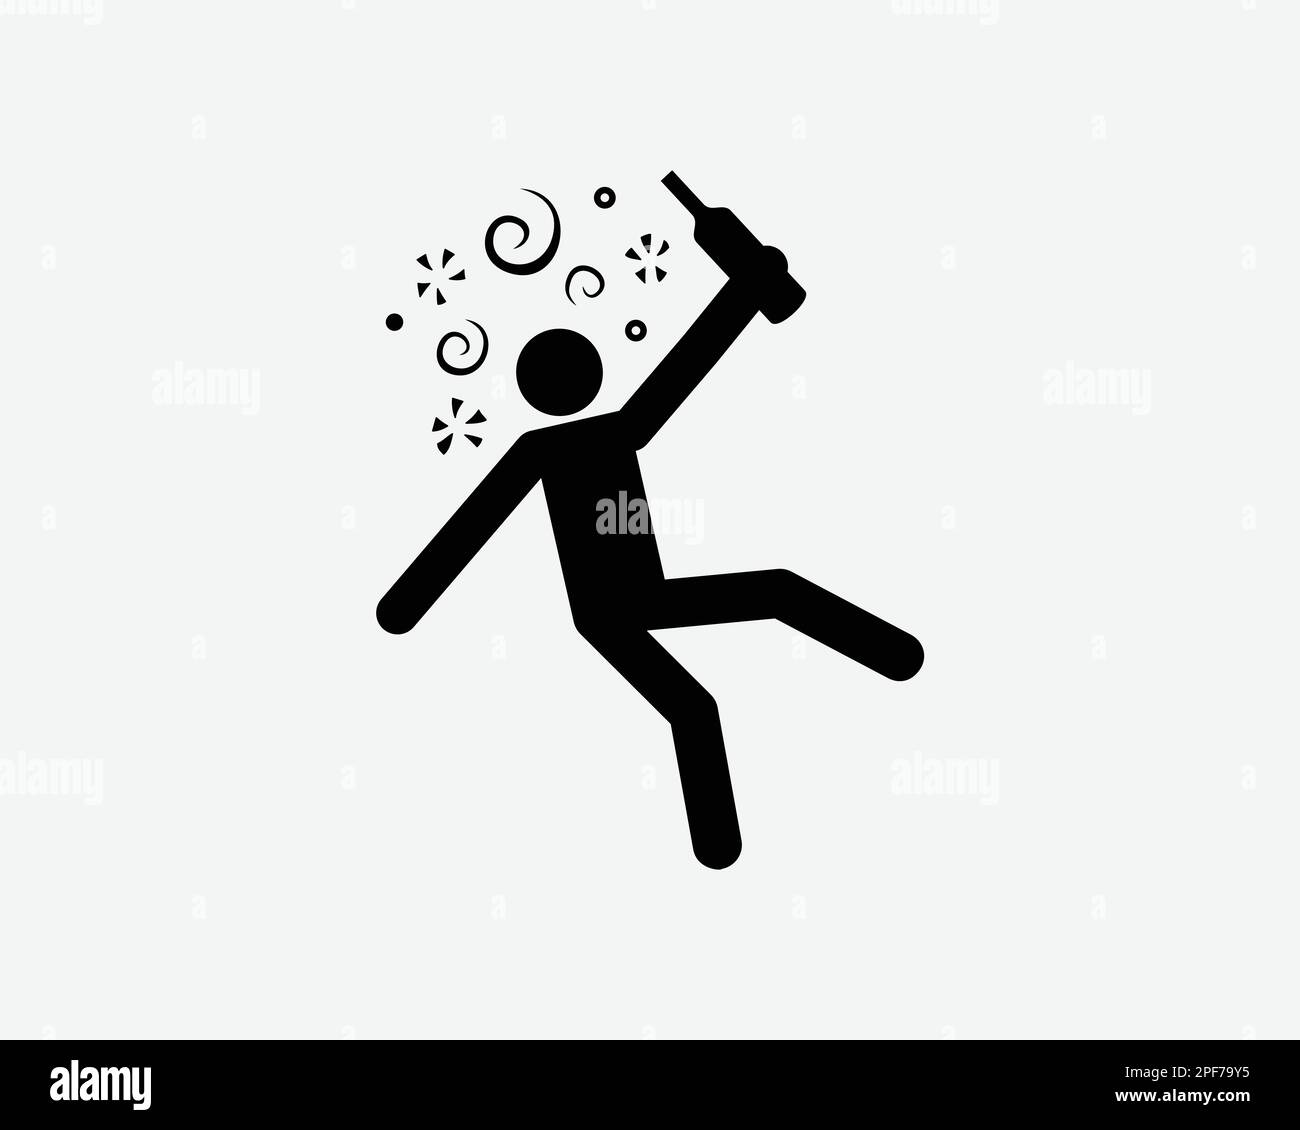 Symbol Betrunkene Person Berauscht Alkohol Trinken Dizzy Vector Schwarze Weiße Silhouette Symbol Zeichen Grafik Clipart Artwork Illustration Piktogramm Stock Vektor